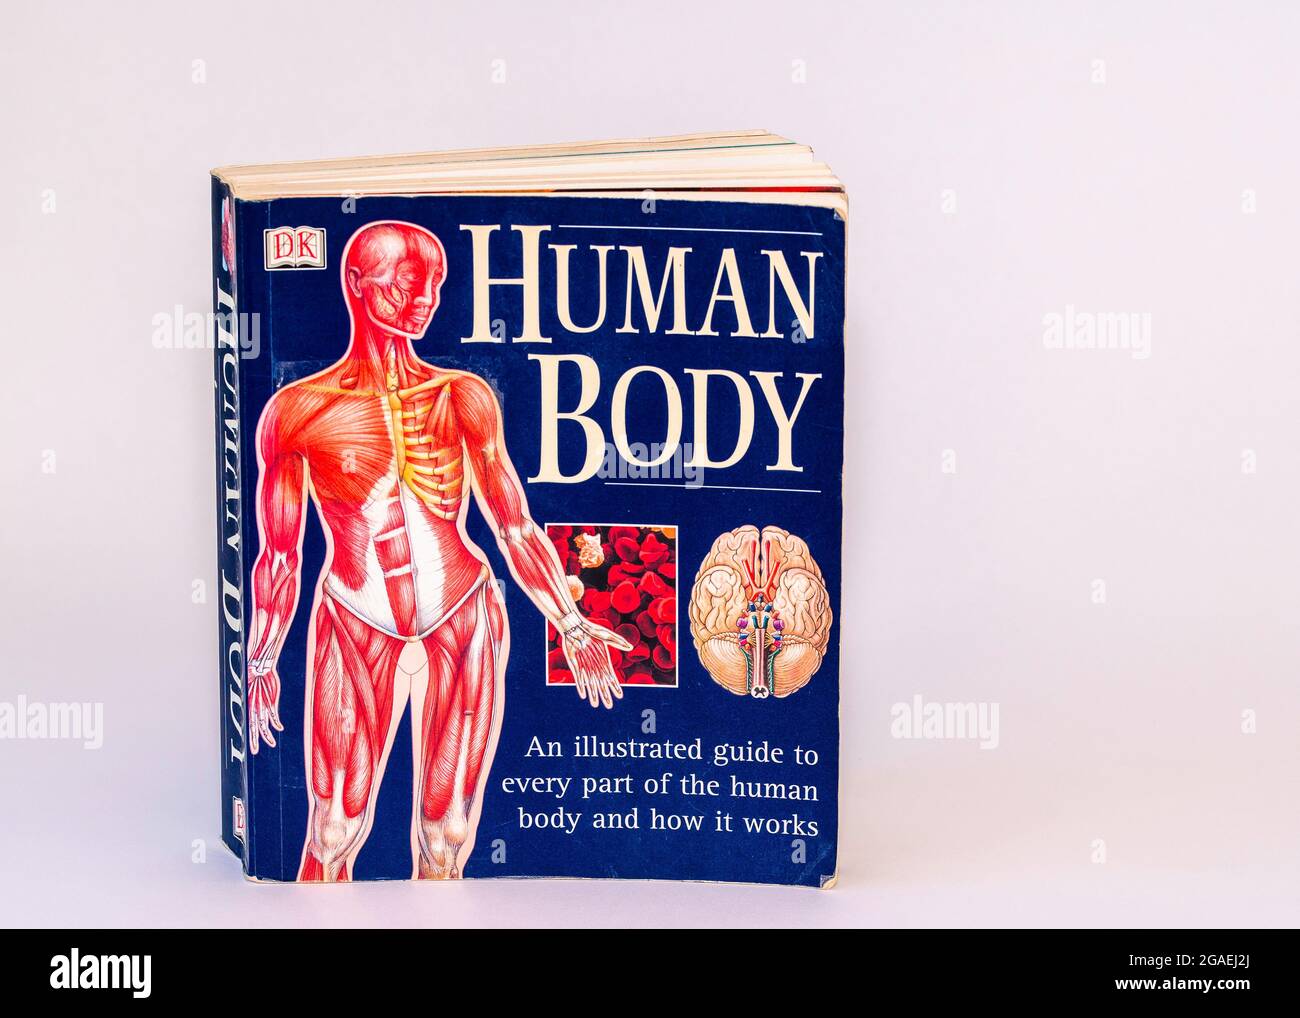 Un guide illustré de chaque partie du corps humain et comment il fonctionne livre de poche Banque D'Images